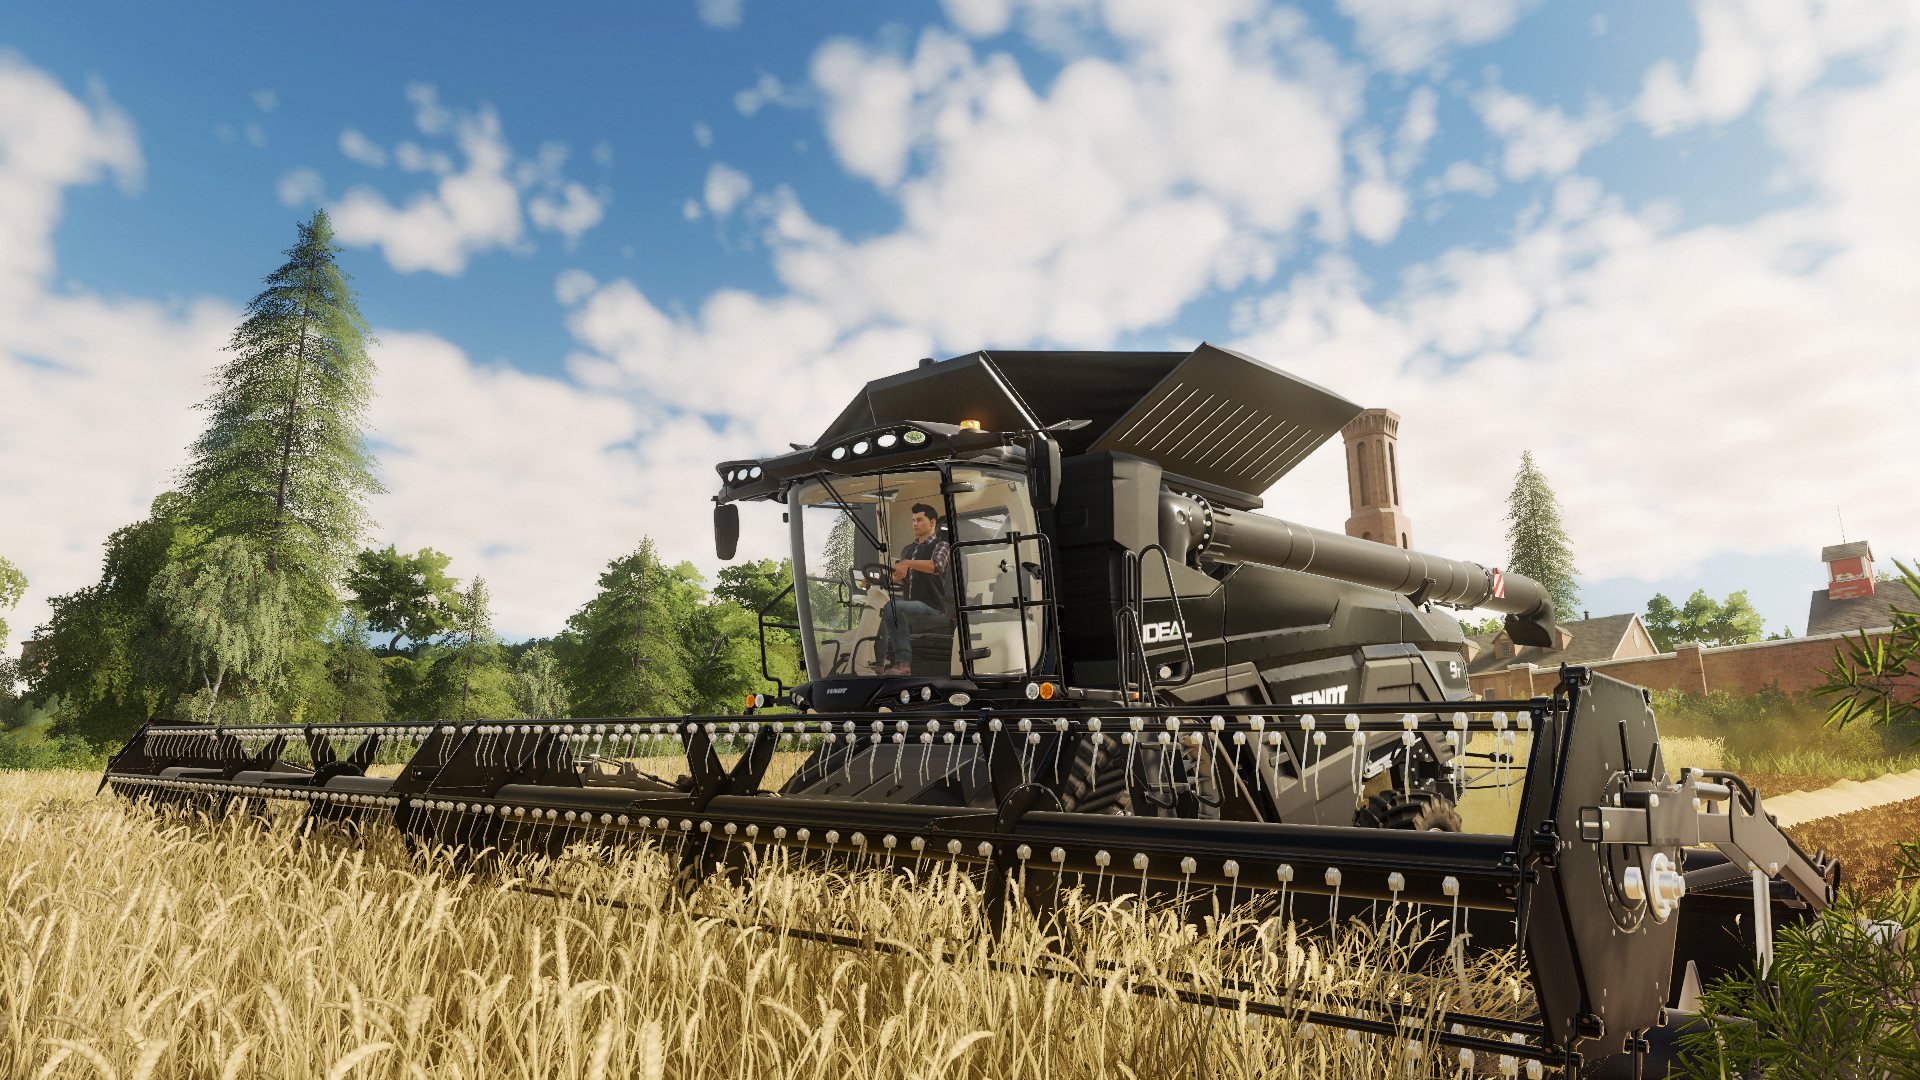 Farming Simulator 19 Platinum Edition Epic Games Account